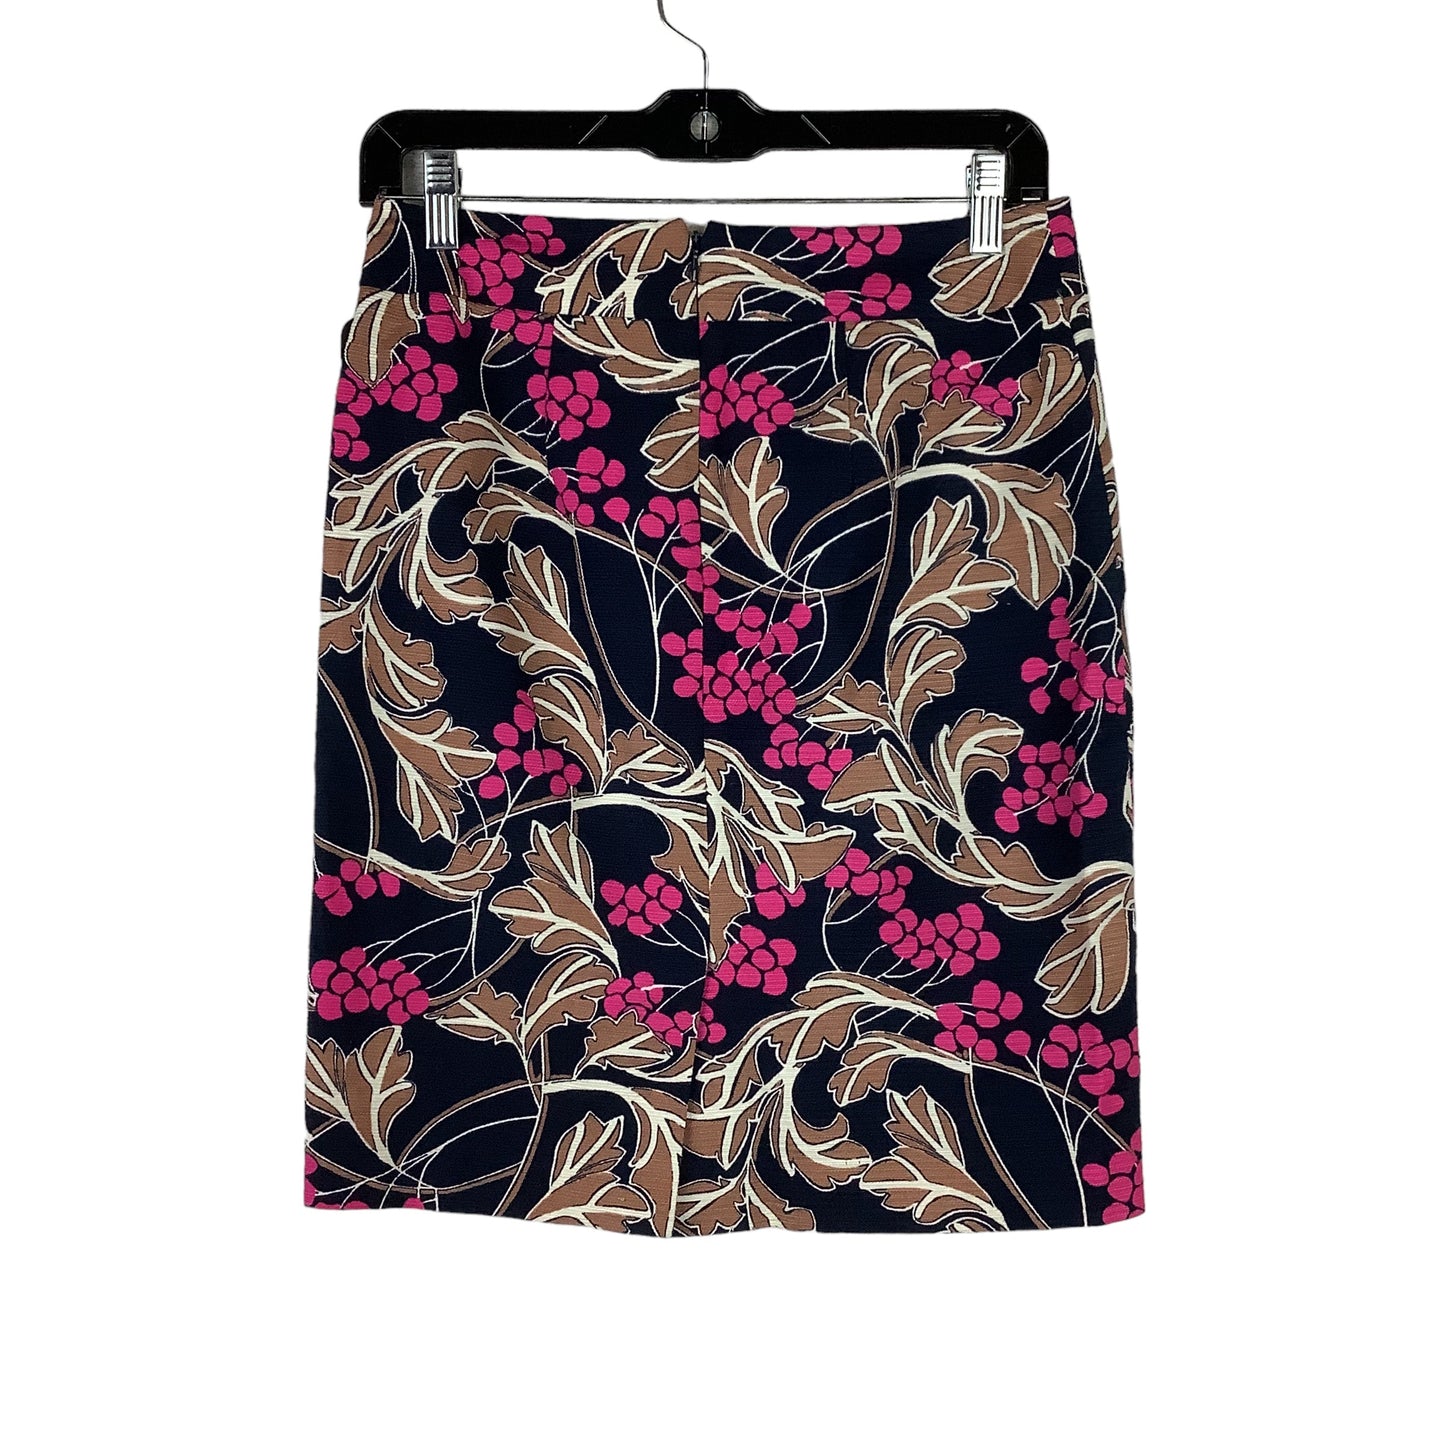 Skirt Midi By Ann Taylor O  Size: 2petite